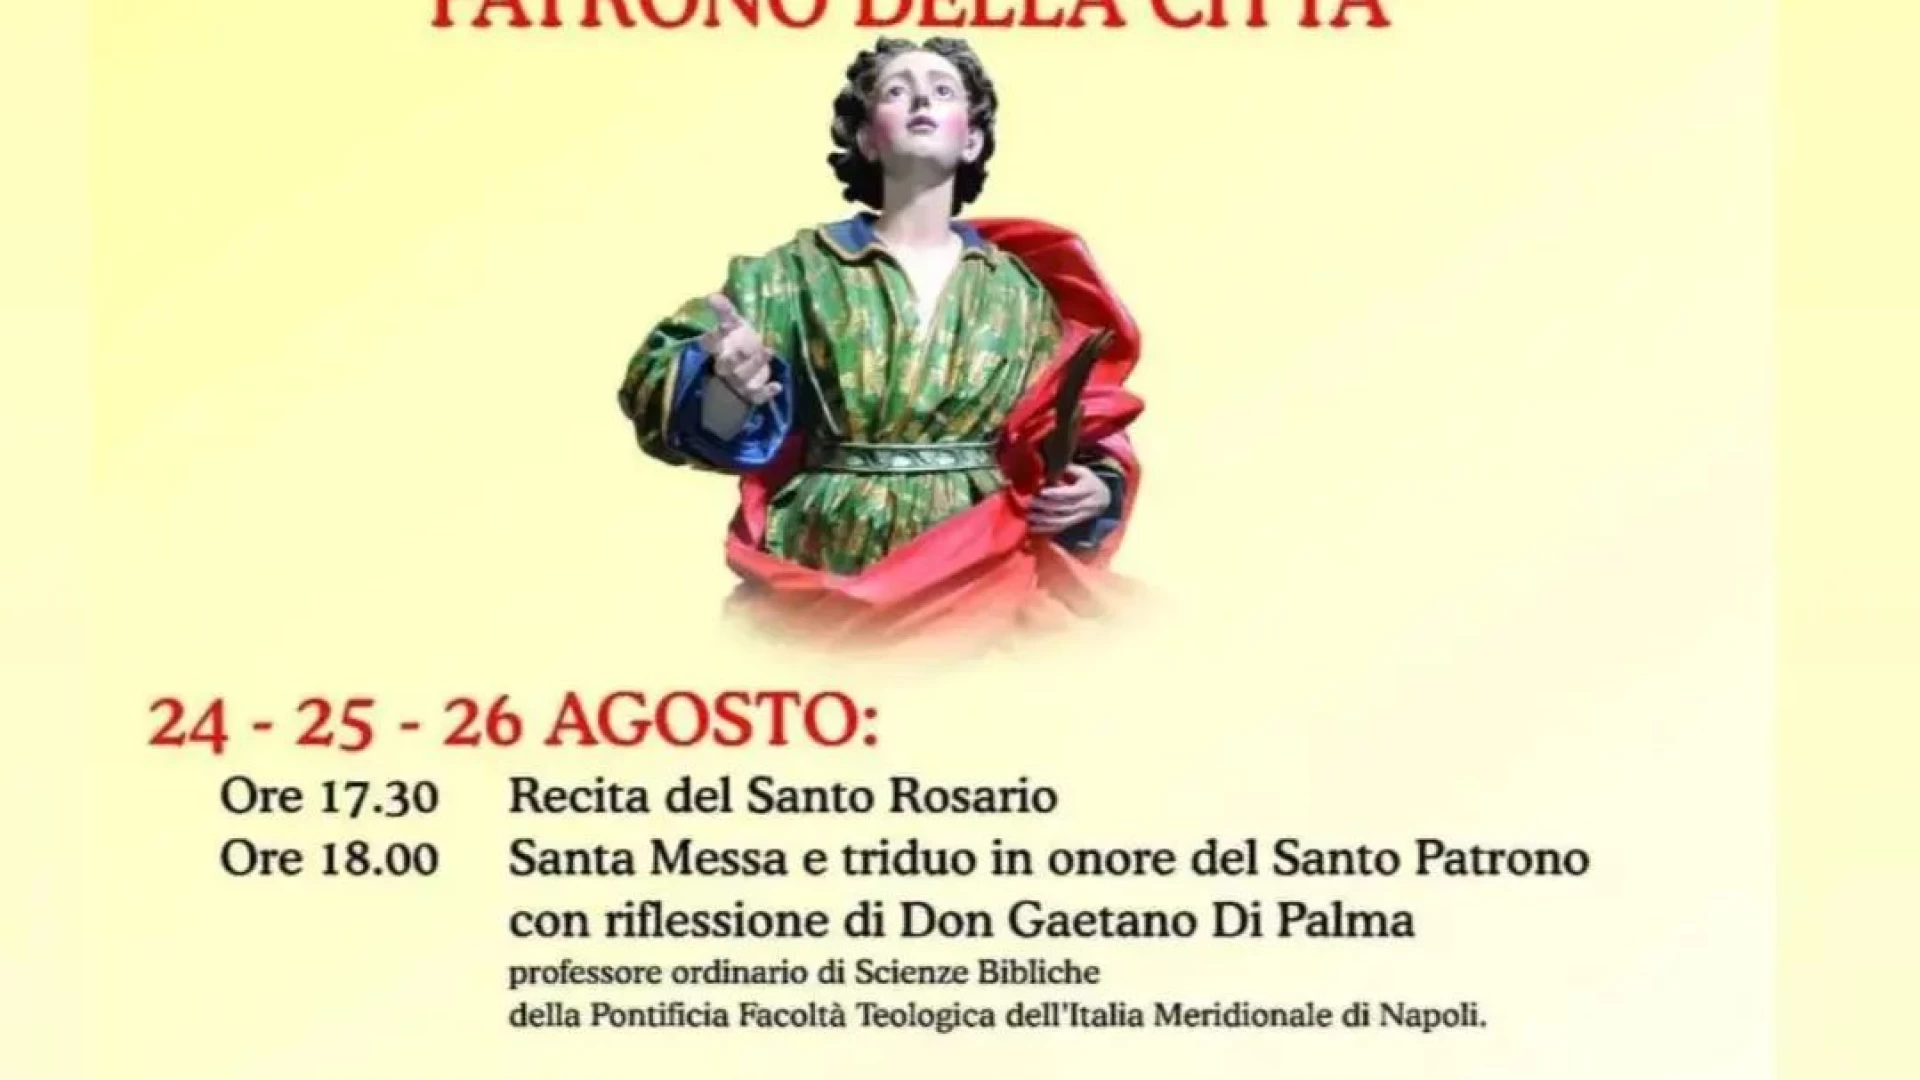 Castel Di Sangro: il programma ufficiale dei festeggiamenti dedicato al patrono della città San Rufo.